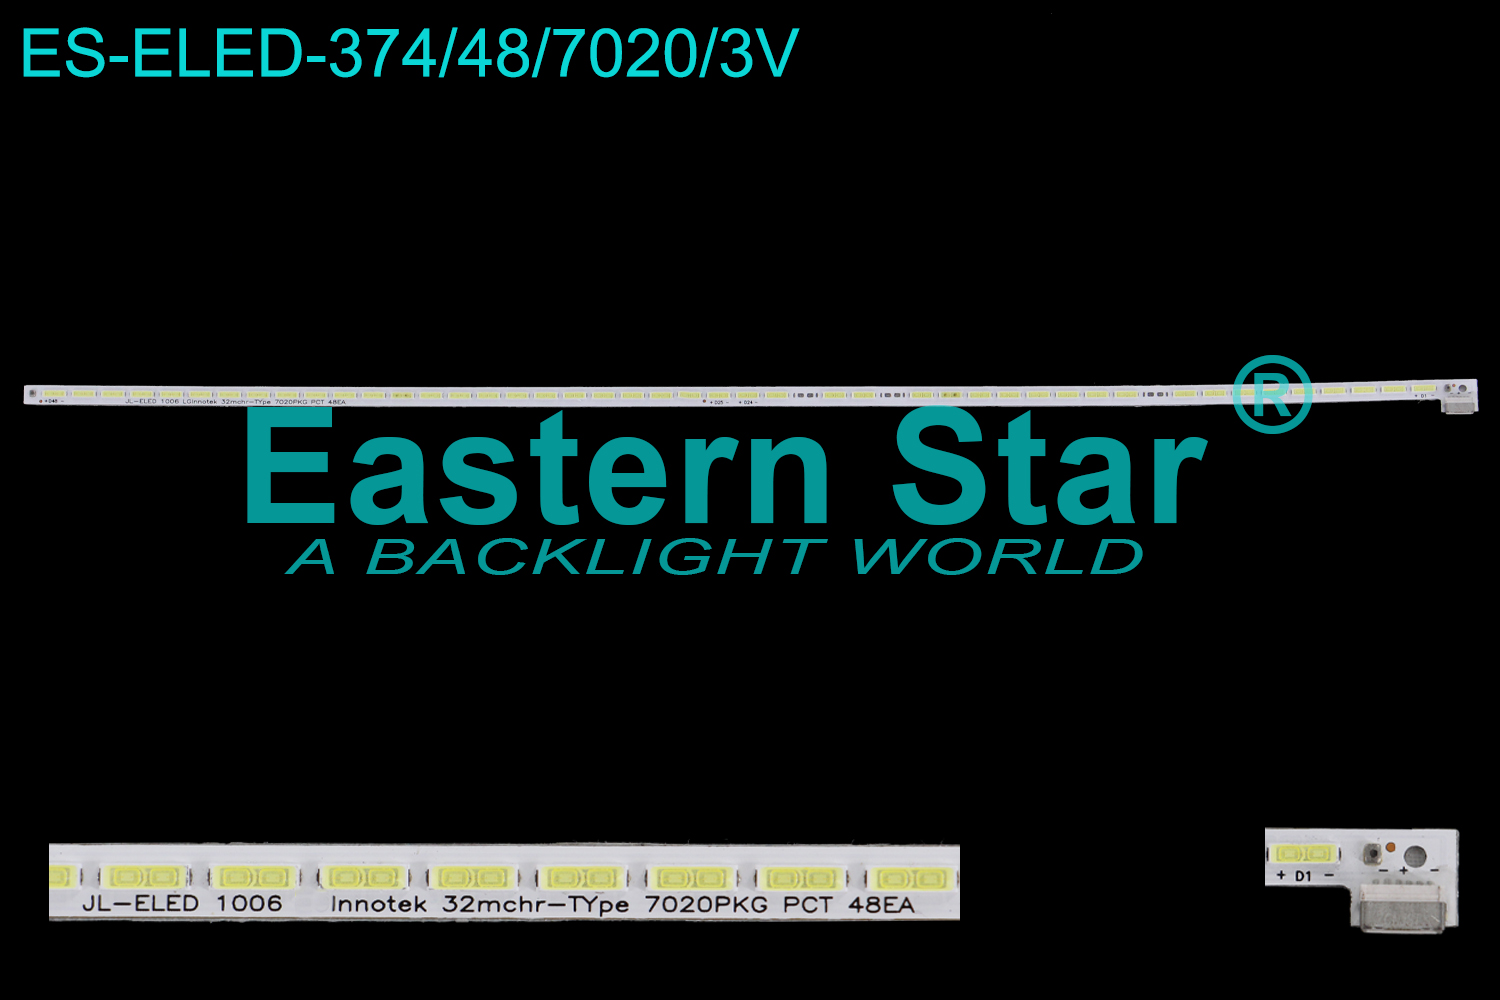 ES-ELED-374 ELED/EDGE TV backlight use for 32'' Lg 32FLK274SC,  Vox 32T2880 JL-ELED 1006 LG Innotek 32mchr-TYpe 7020PKG PCT 48EA LED STRIPS(1)